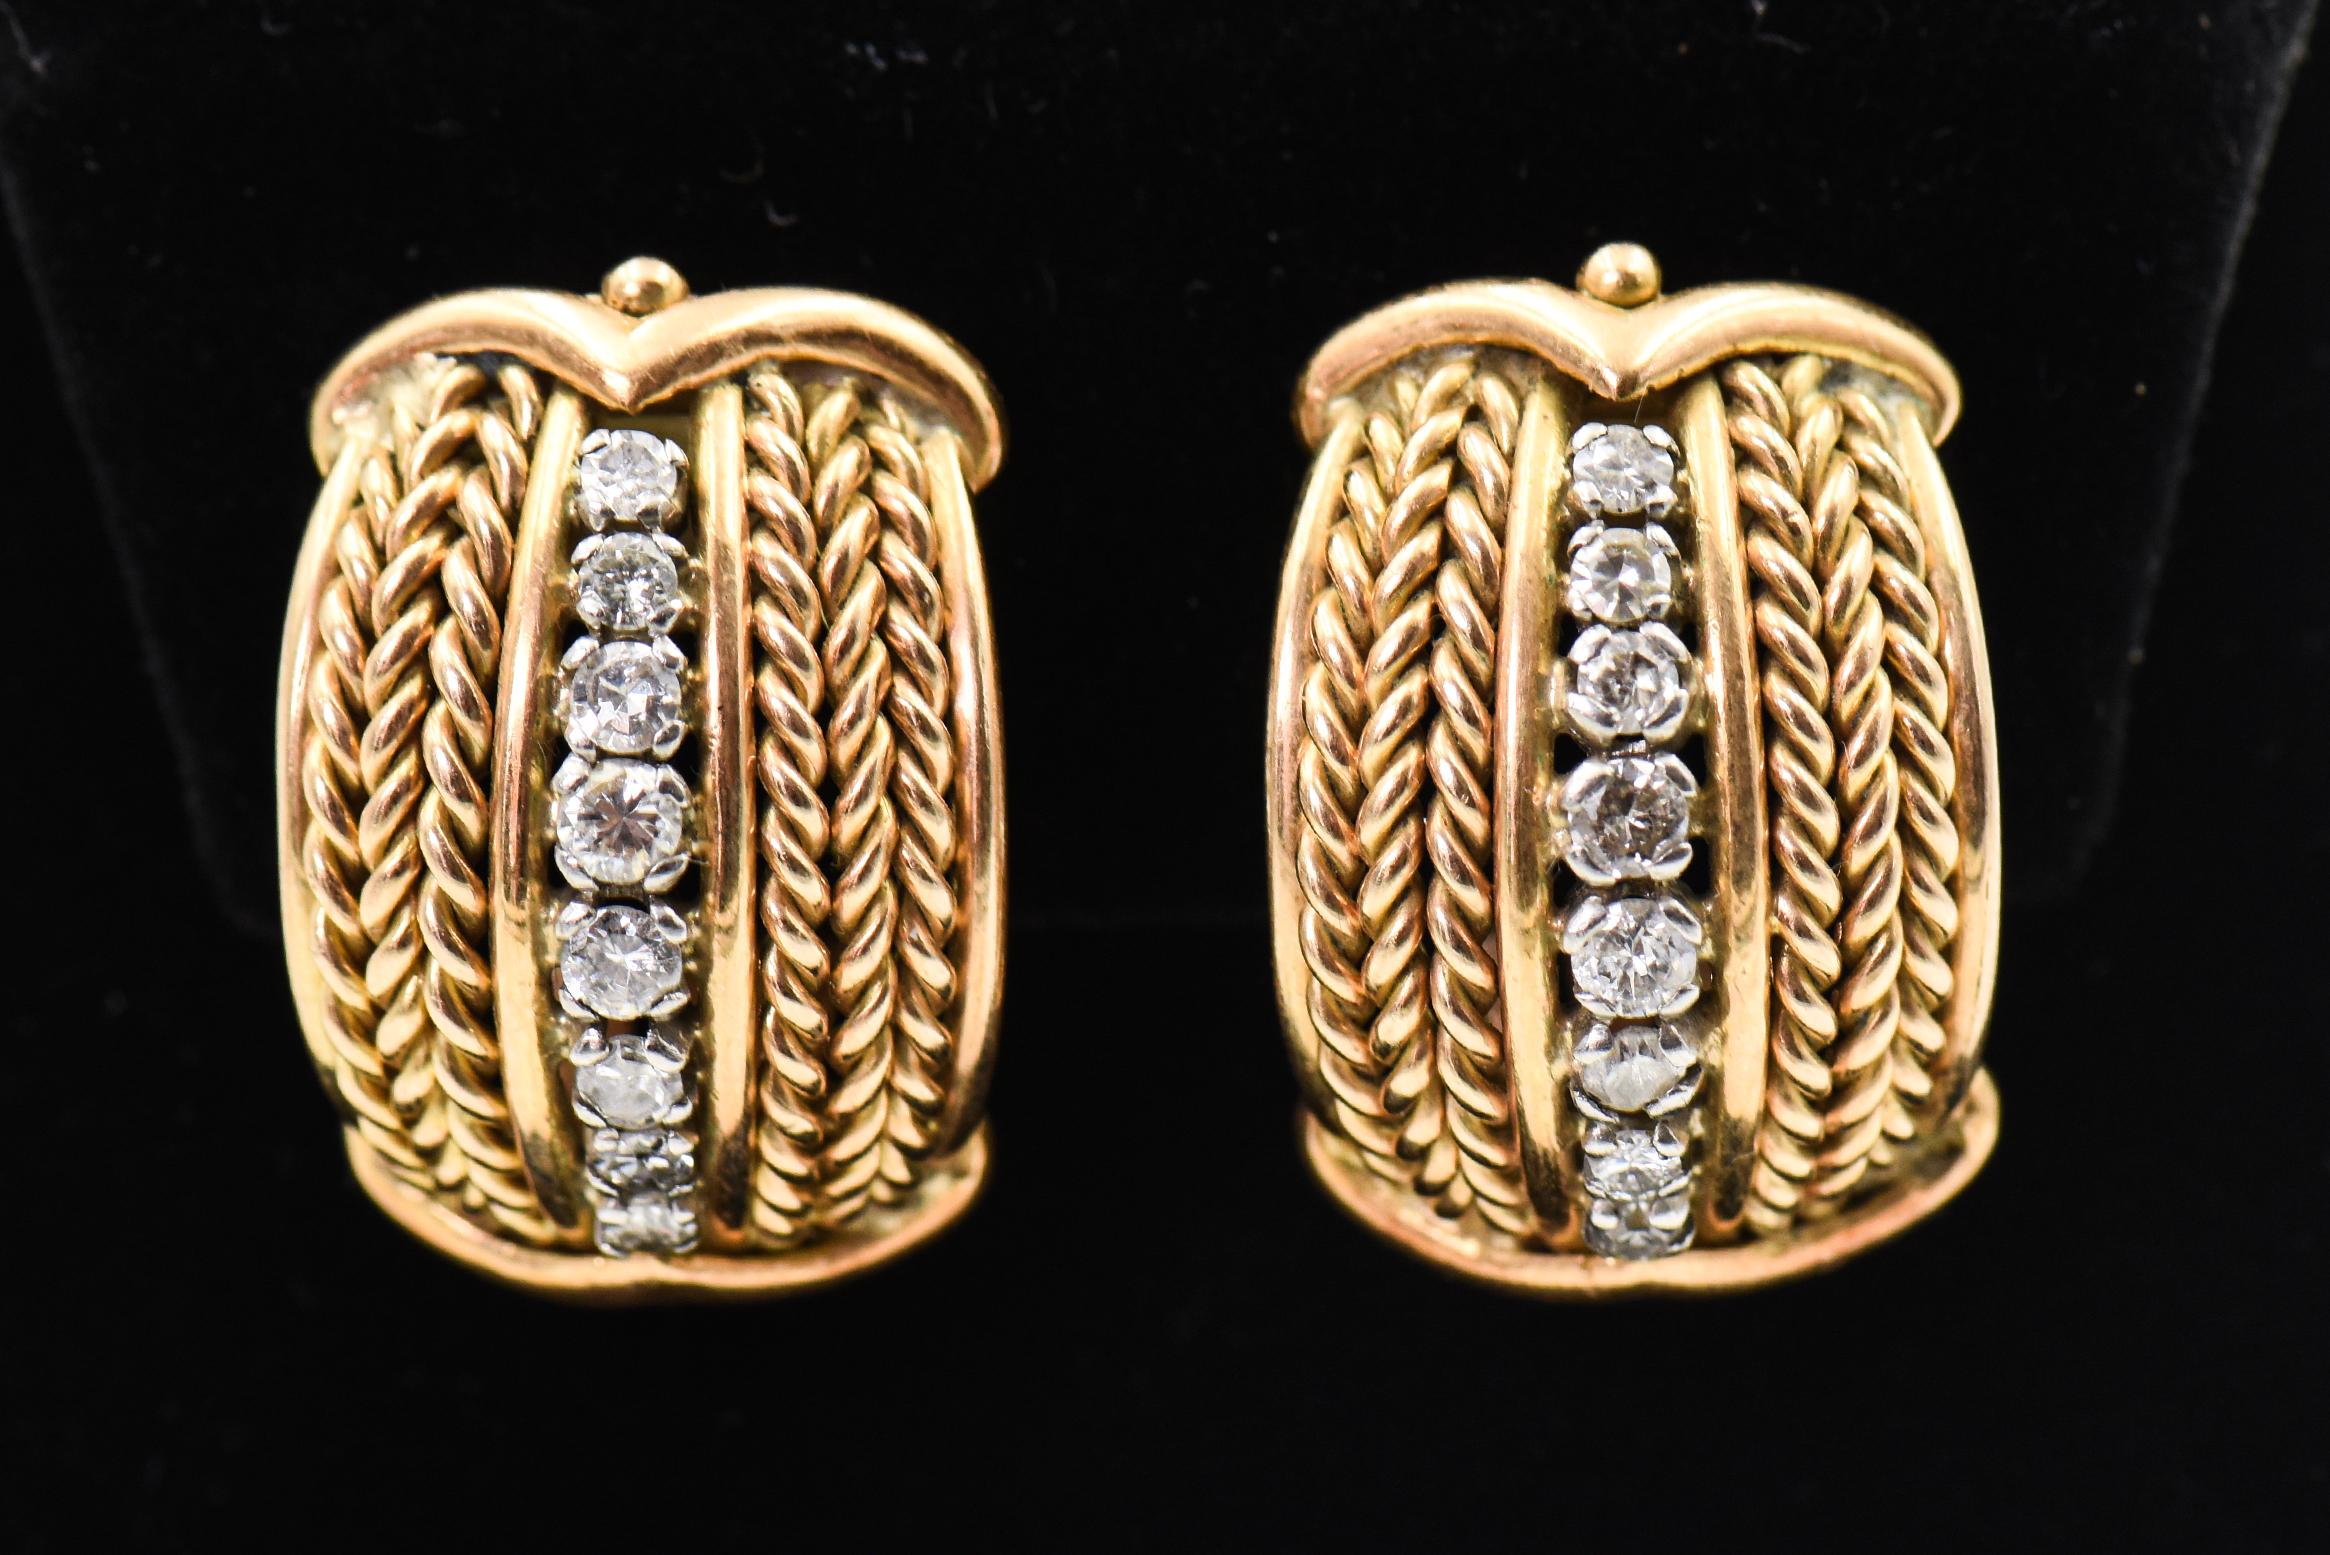 1970er Jahre Stark stilisierte Ohrringe mit gewebten Abschnitten auf beiden Seiten einer abgestuften Diamantlinie in der Mitte.  Oben und unten ist ein stilisierter Pfeil angebracht.  Diese Ohrringe aus 18 Karat Gelbgold sind mit einem